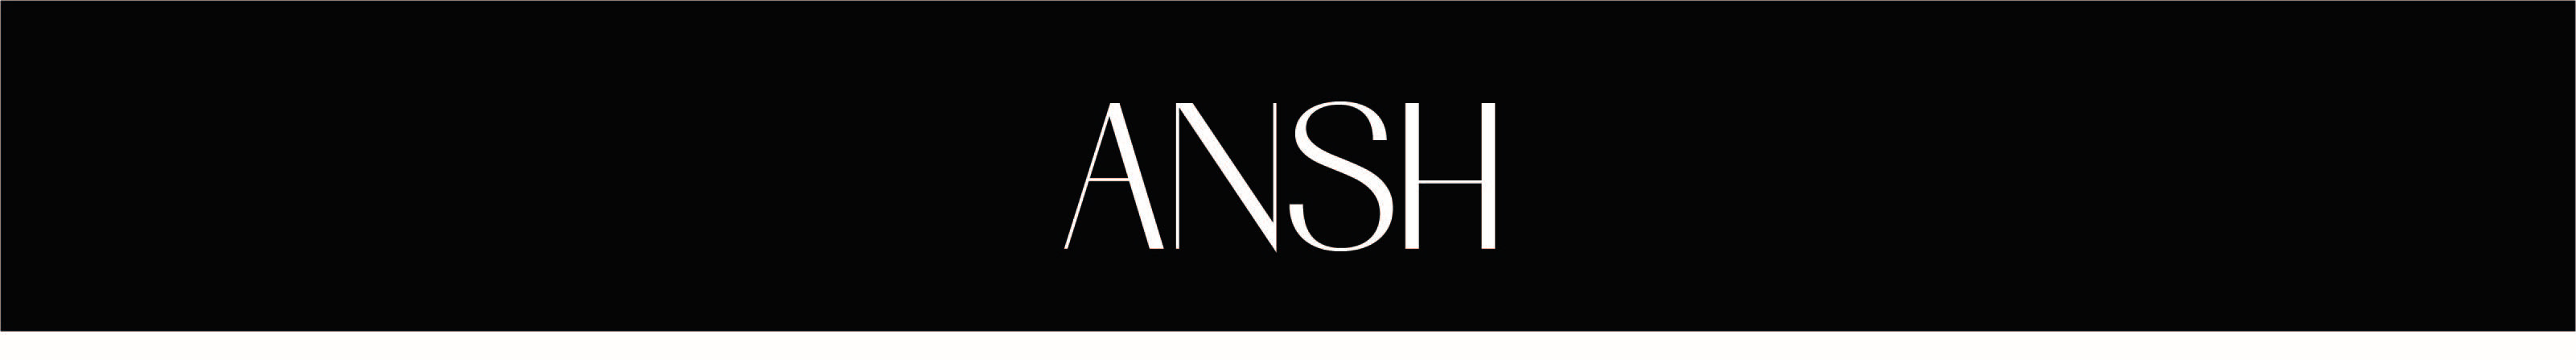 Ansh Rana's profile banner